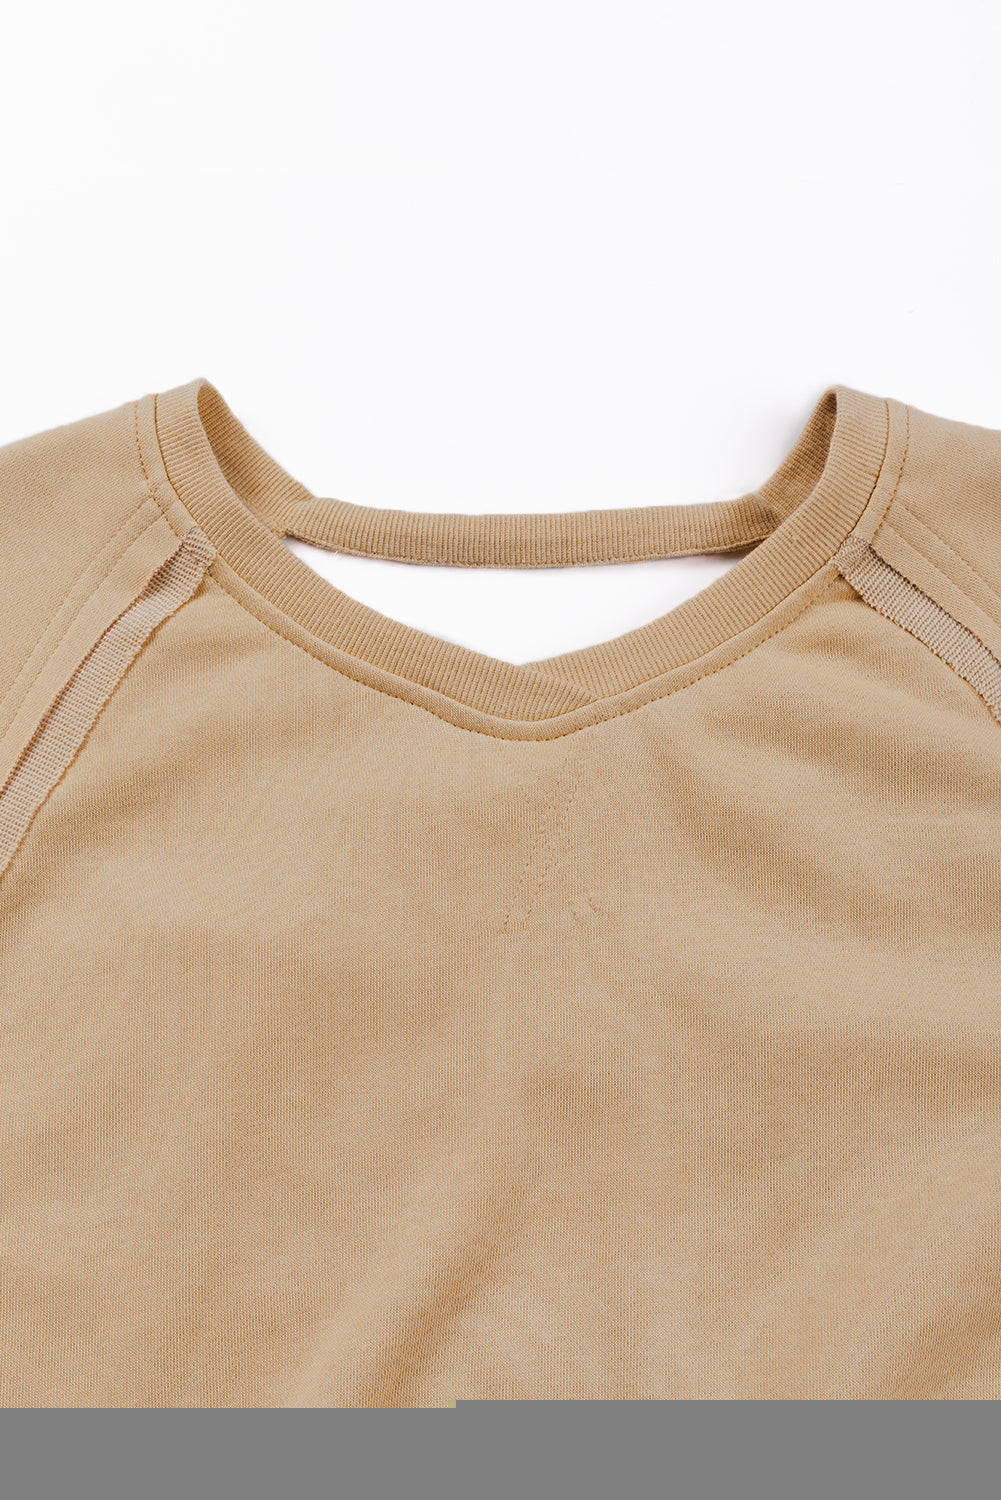 Helles, französisch-beigefarbenes, einfarbiges Sweatshirt mit ausgehöhltem Rücken und Gittermuster